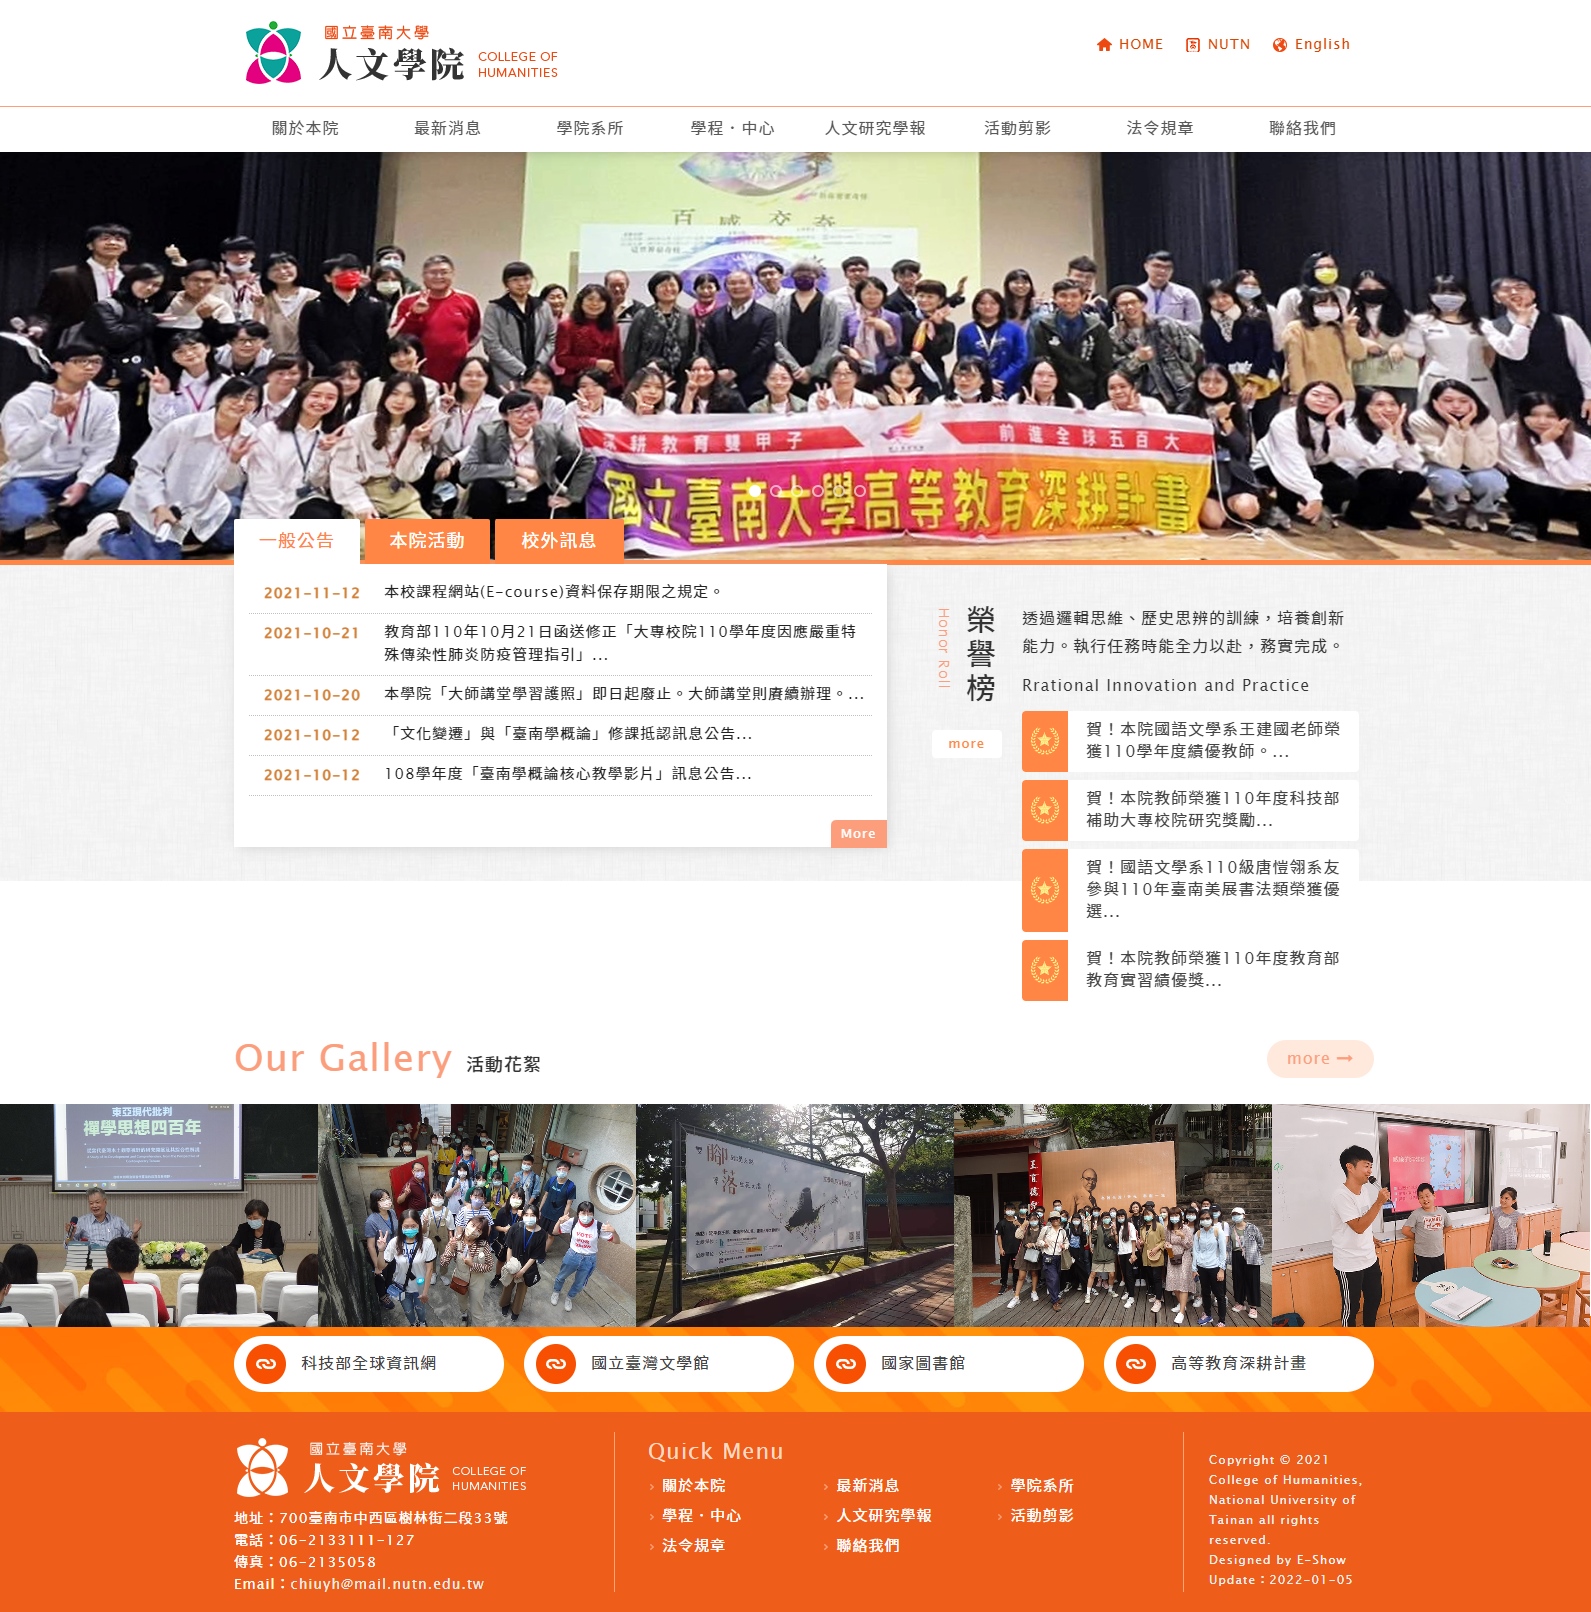 國立臺南大學人文學院 大學系所RWD響應式網站設計
網站設計